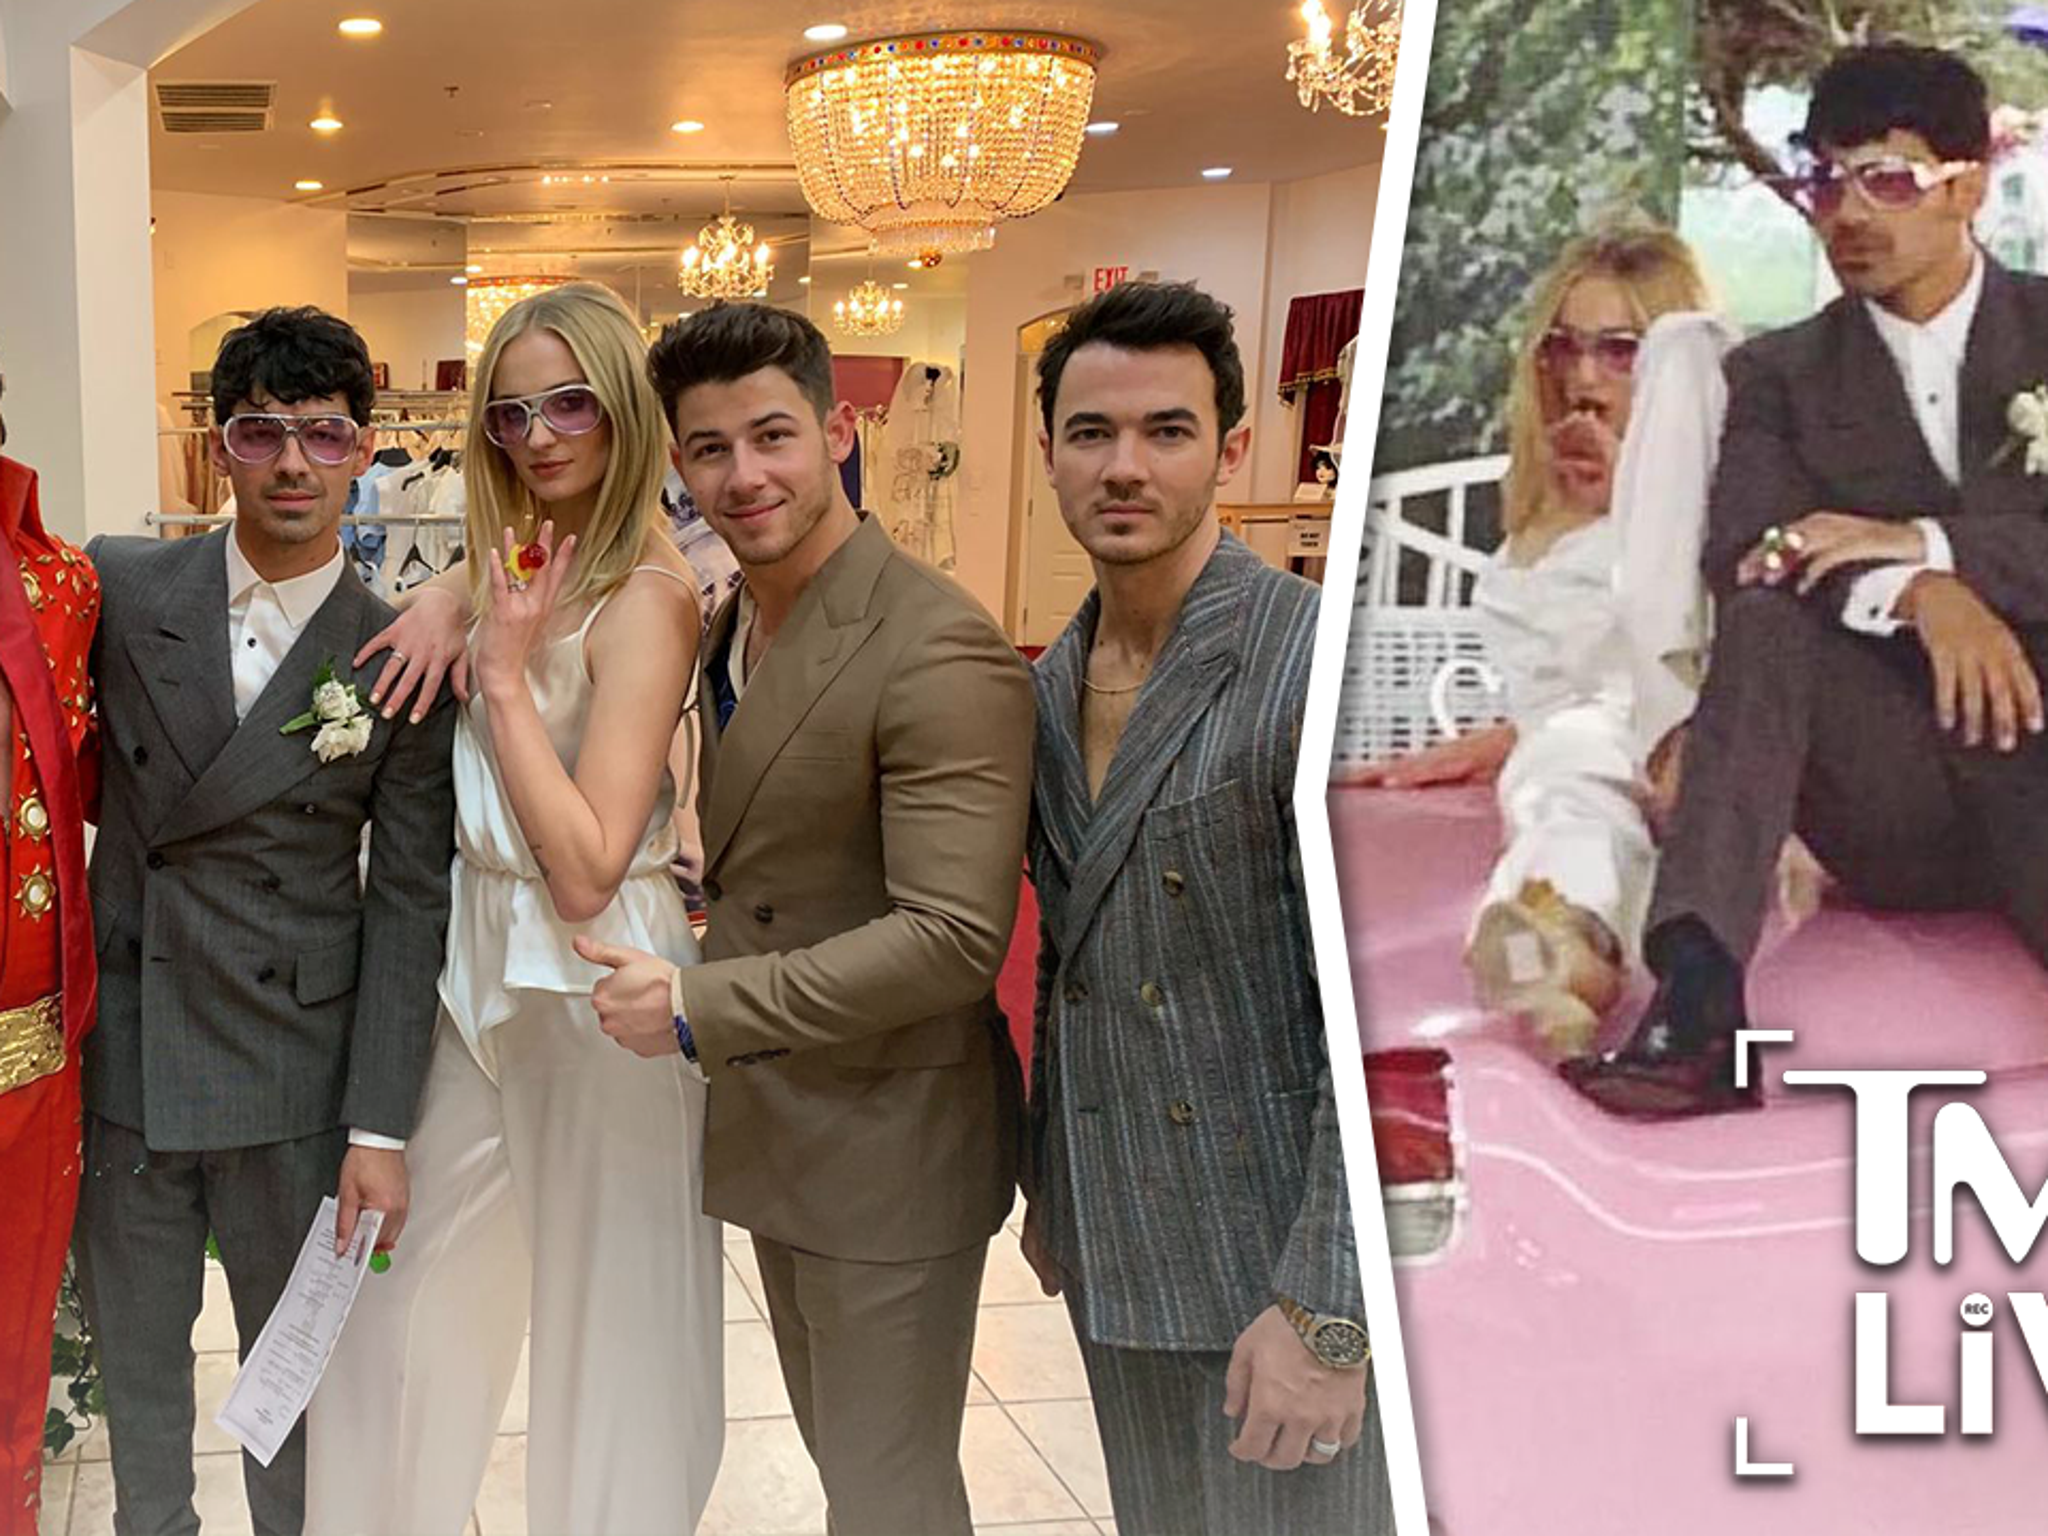 Video Jonas, Turner get married in Las Vegas - ABC News